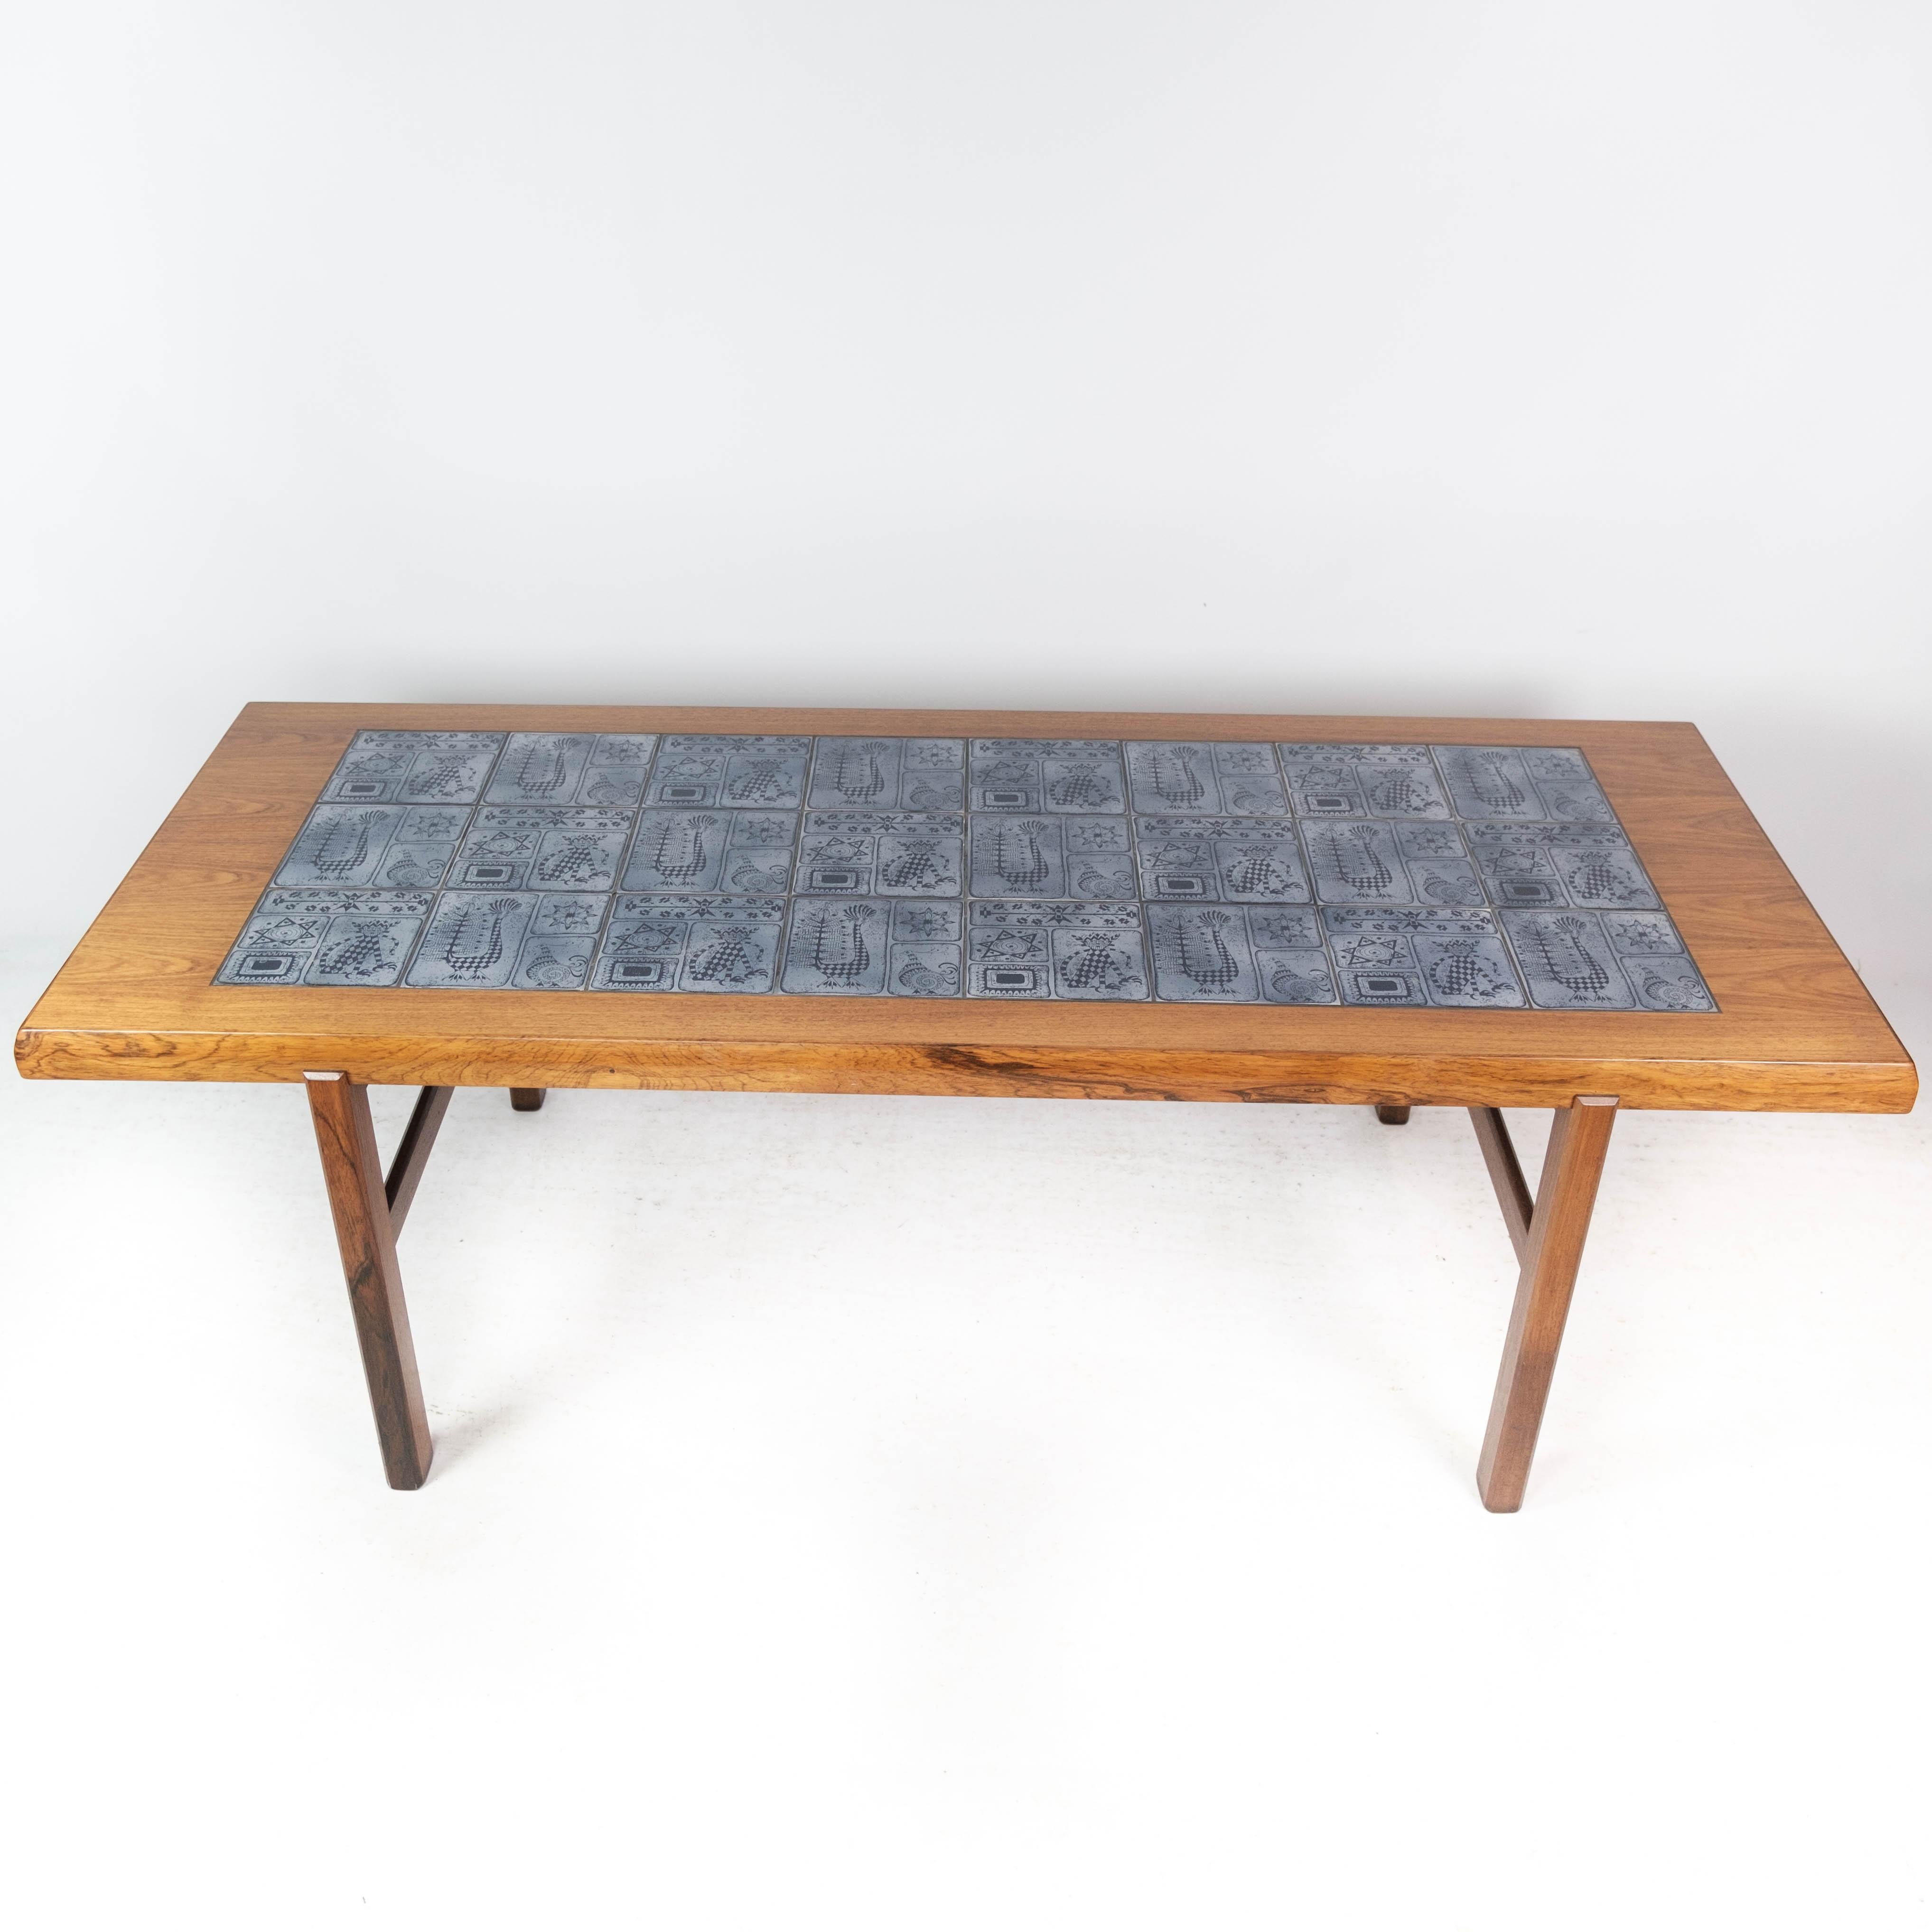 Cette élégante table basse est un superbe exemple du design danois des années 1960, fabriqué avec précision et style par Arrebo Furniture. Fabriquée en luxueux bois de rose, cette table dégage chaleur et sophistication, ajoutant une touche